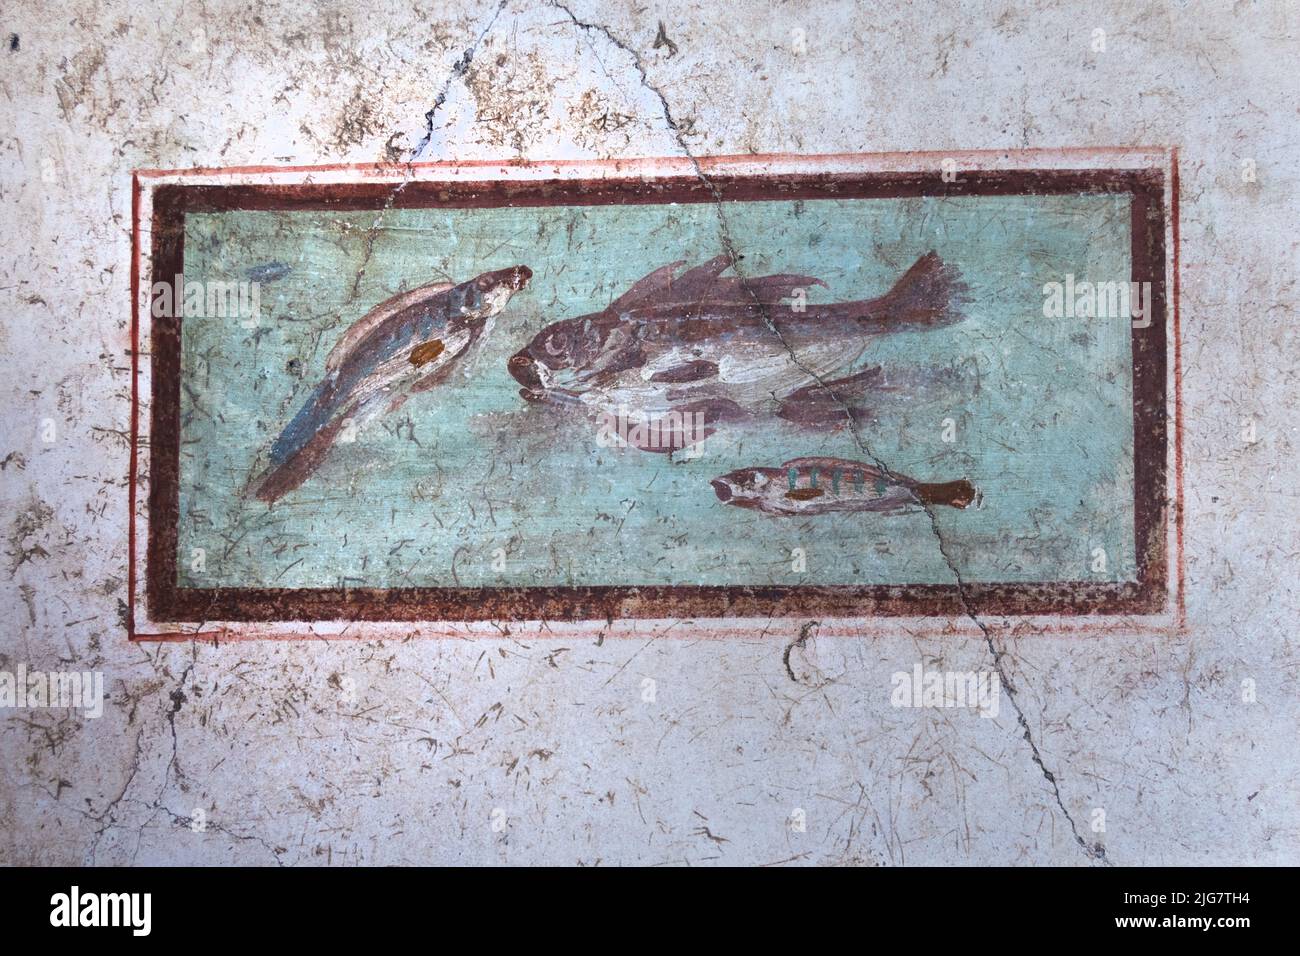 Antichi affreschi a Pompei, l'antica città romana distrutta nel 79 d.C. dall'eruzione del Vesuvio. Sito patrimonio dell'umanità dell'UNESCO. Napoli, Italia Foto Stock